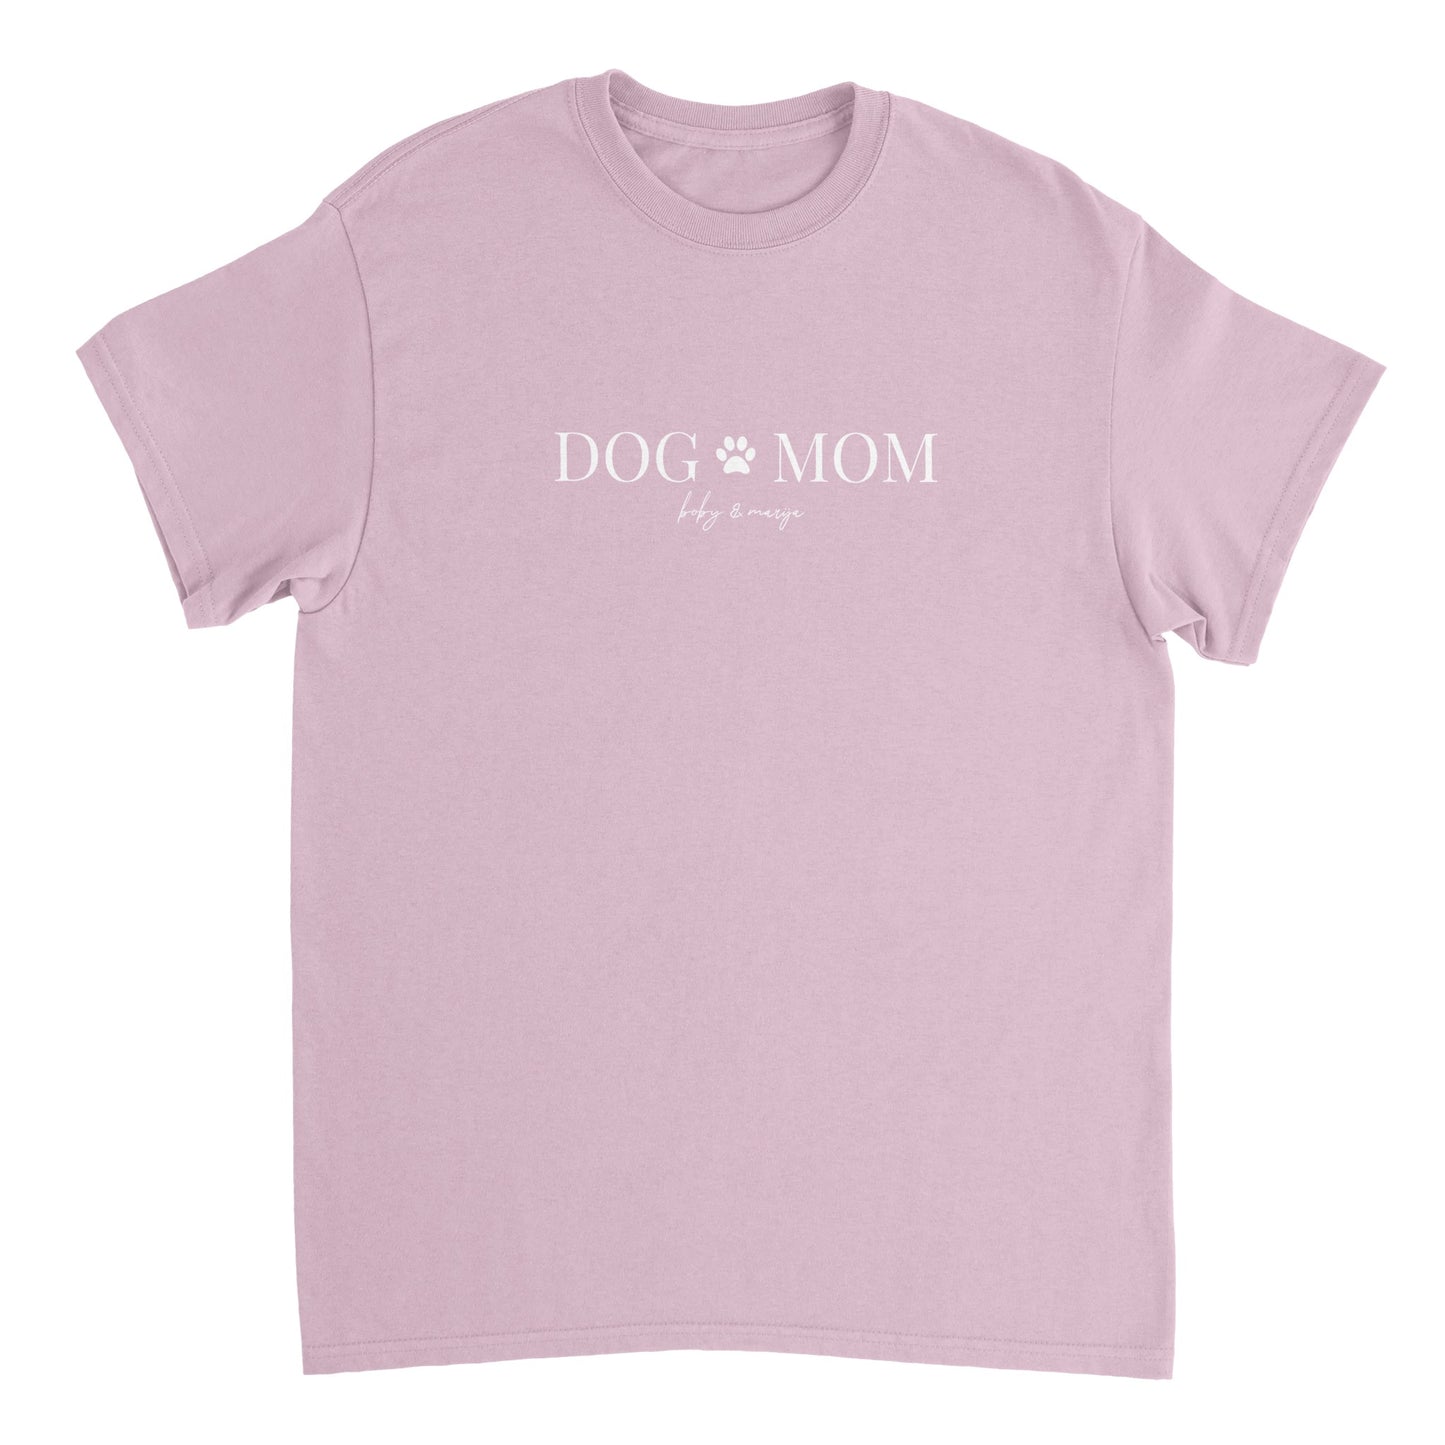 Unisex T-Shirt - [DOG MOM]